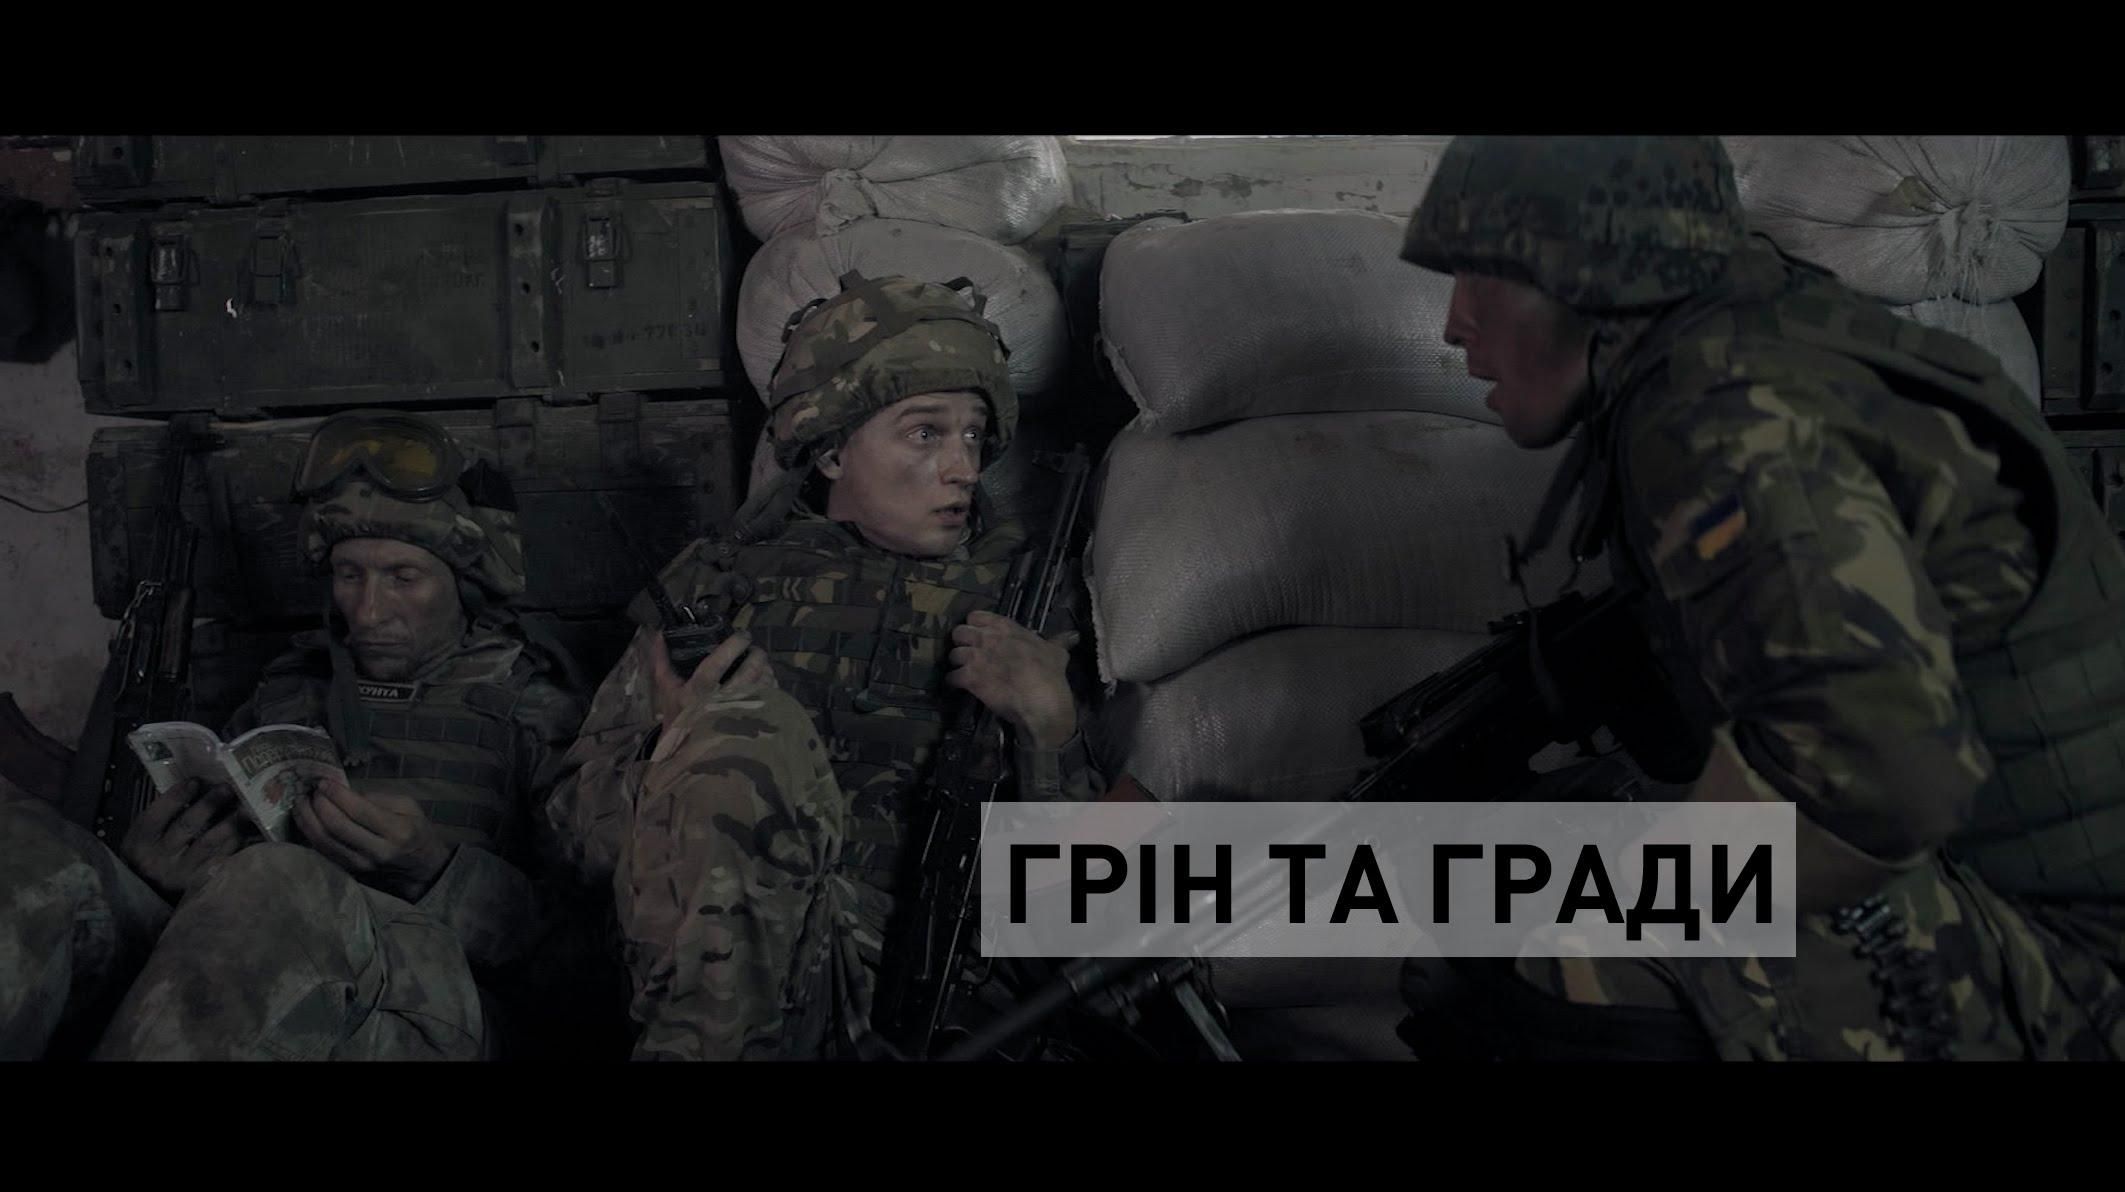 BABYLON'13 снимают комедийный мини-сериал о бойцах АТО